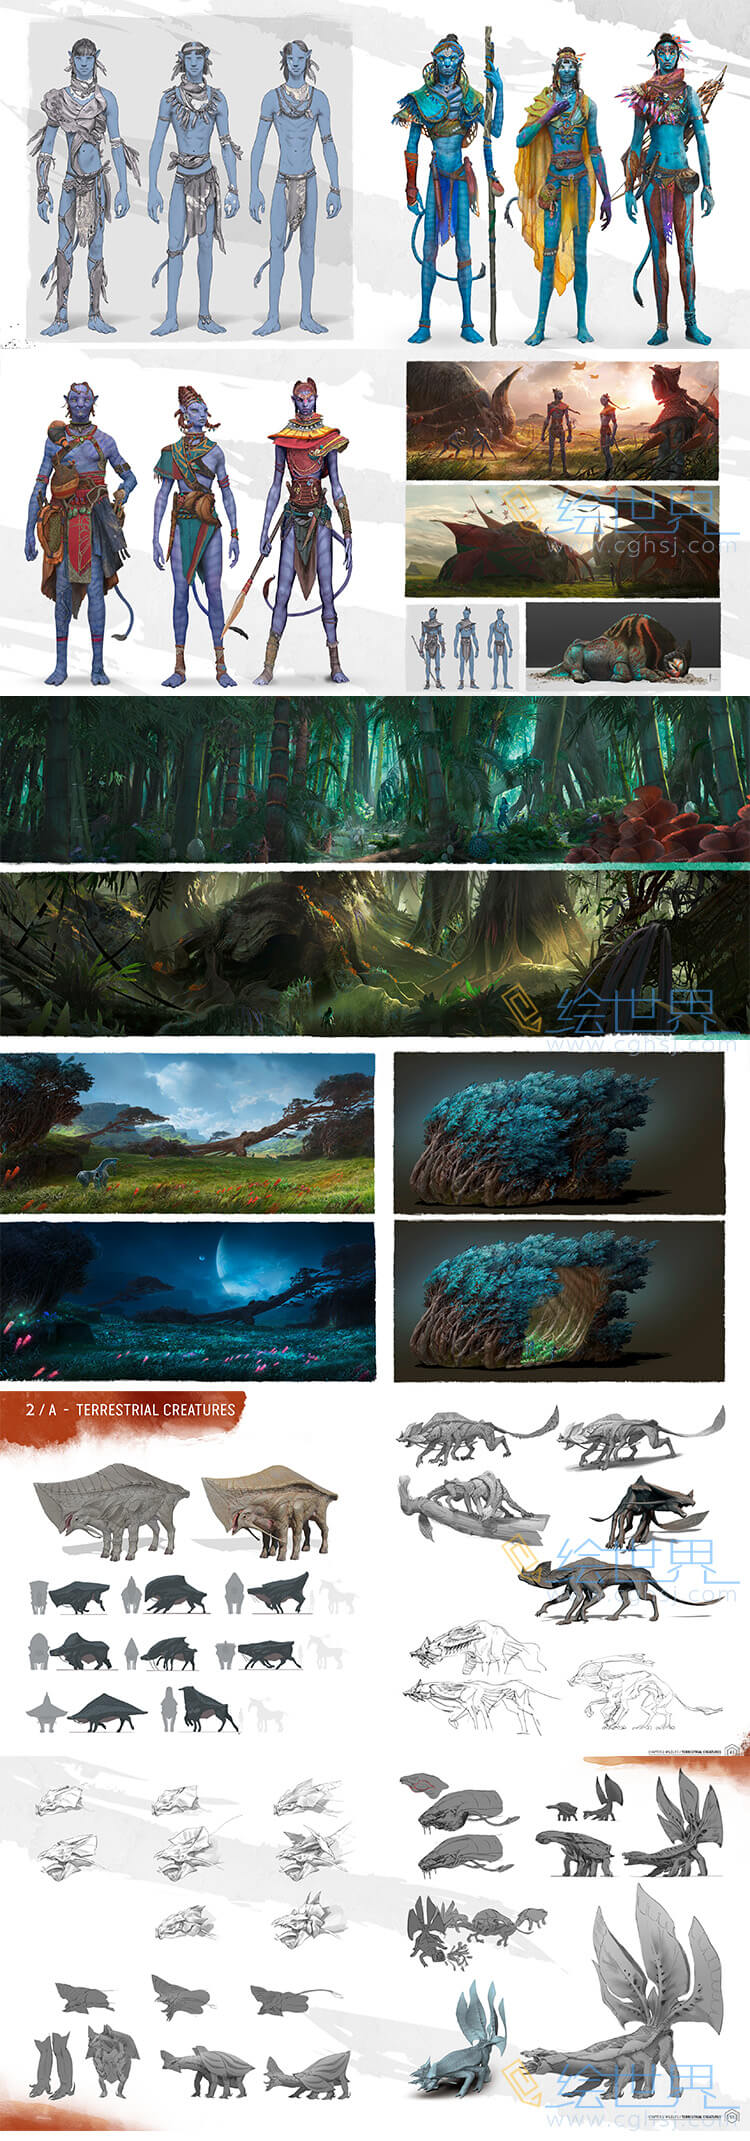 [会员][设定集] 阿凡达潘多拉边境 The Art of Avatar Frontiers of Pandora